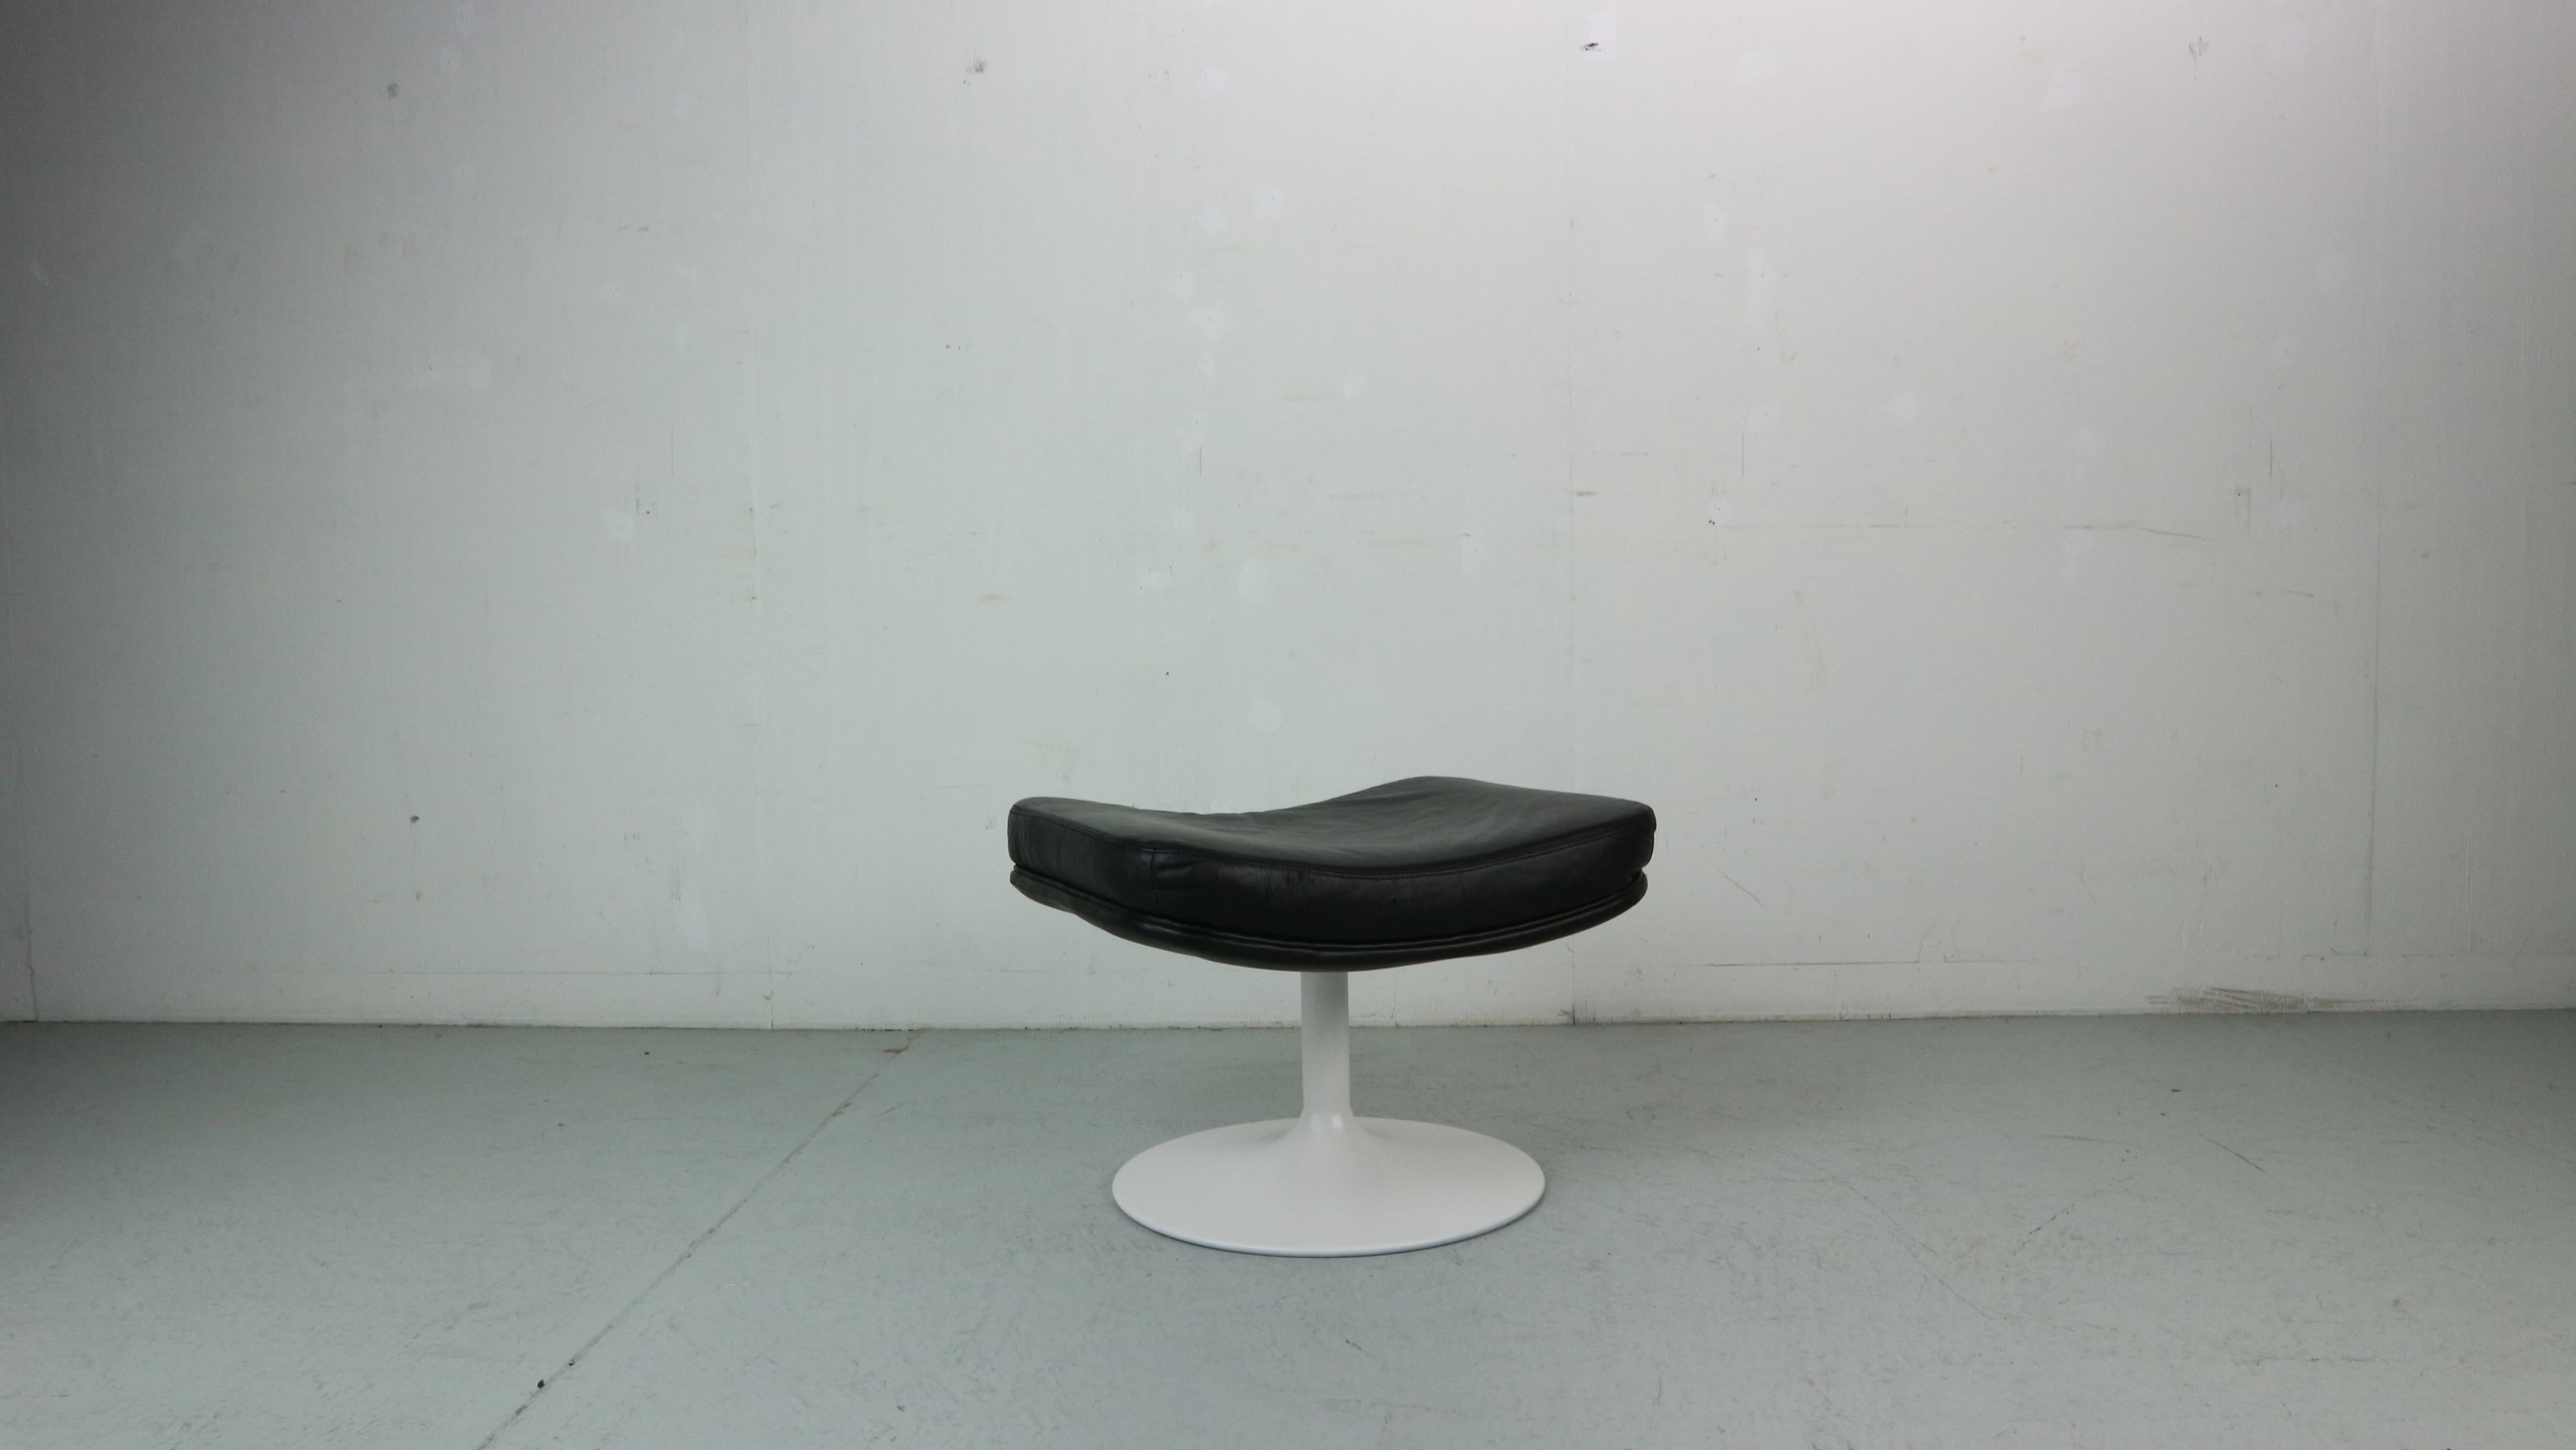 P588 Hocker oder Ottomane, der alle Stühle der Serie 500 von Geoffrey Harcourt aufnehmen kann. 
Das Leder ist insgesamt in gutem Zustand und der Fuß wurde in einem matten Weiß neu gestrichen.
